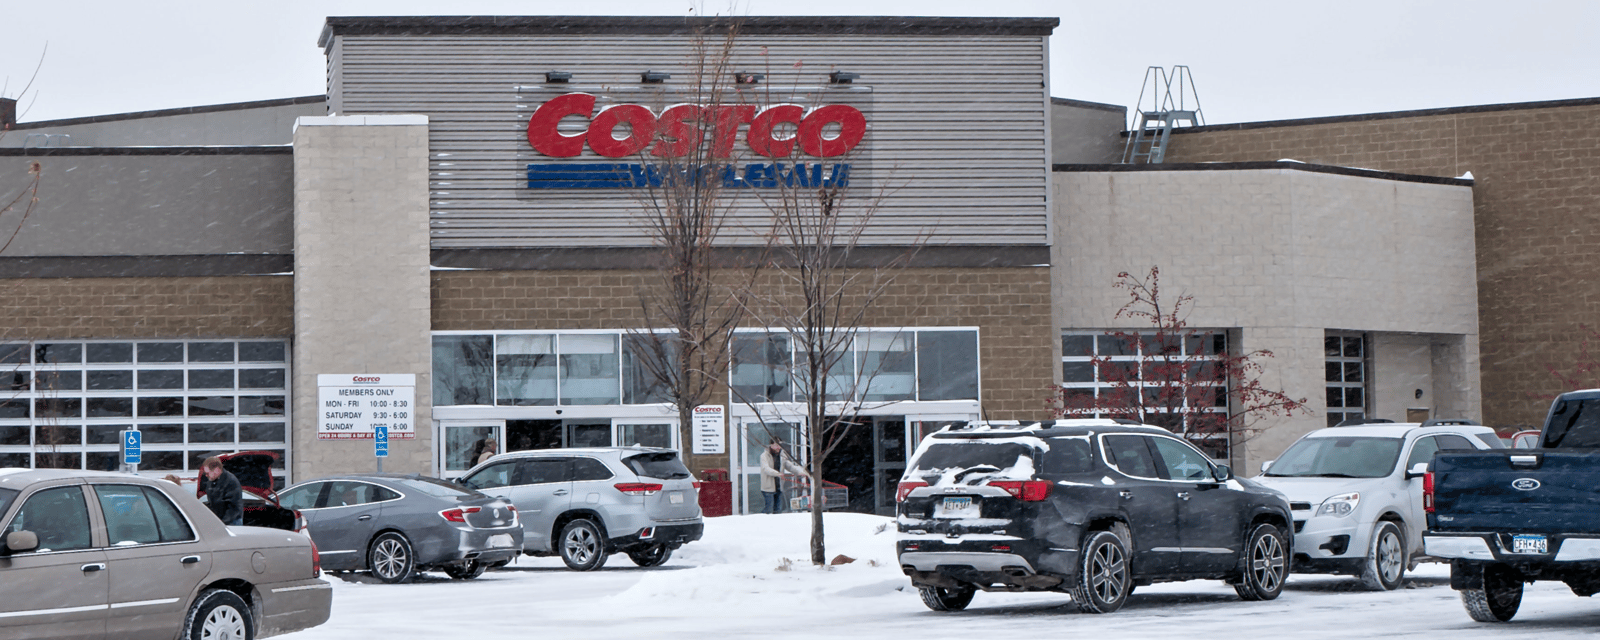 Costco modifie ses heures d’ouverture pour la dernière semaine avant Noël